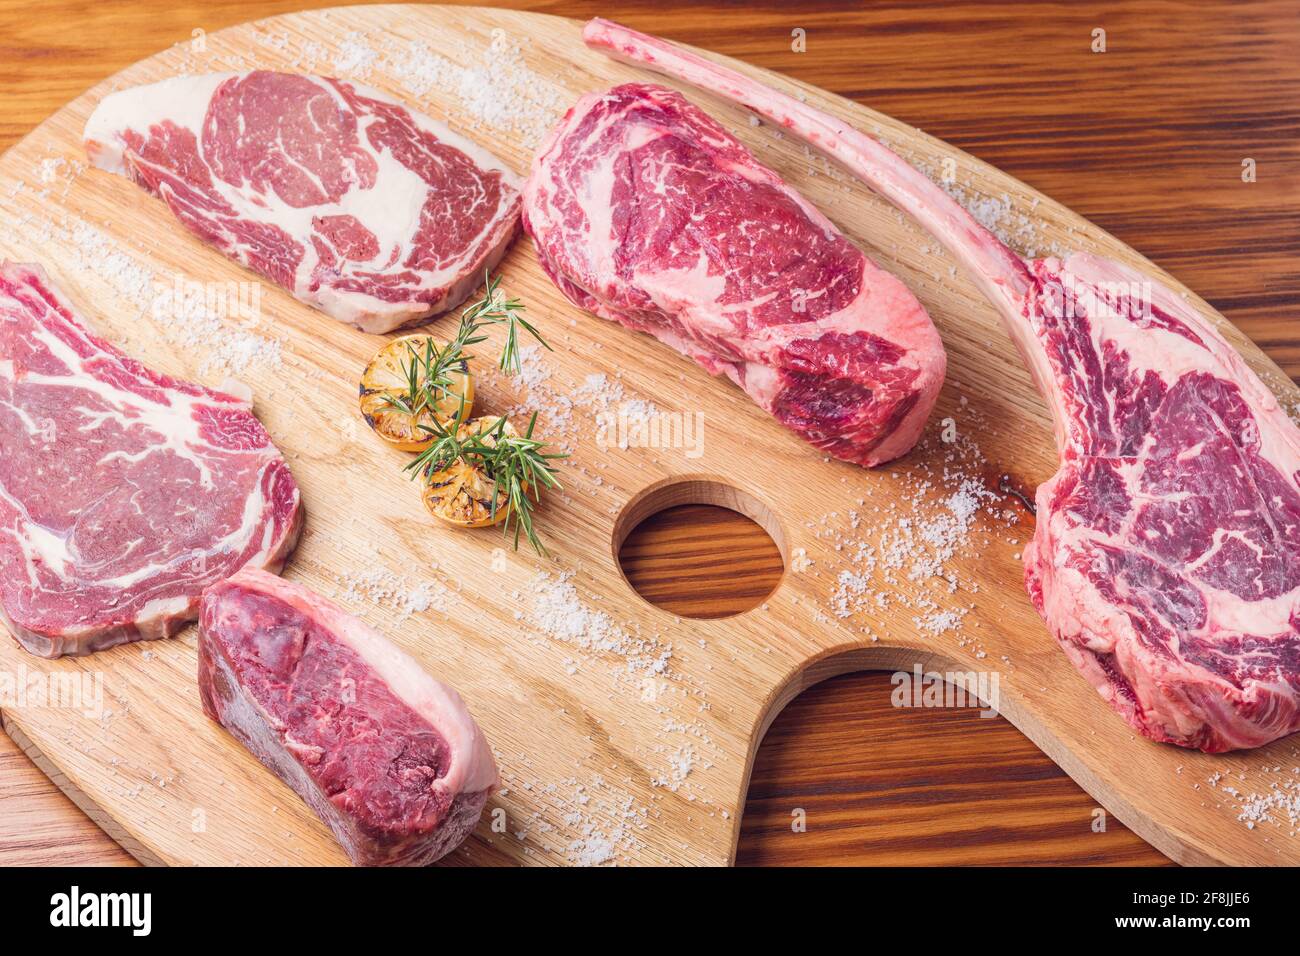 https://c8.alamy.com/comp/2F8JJE6/cuts-of-raw-steak-premium-on-rustic-wooden-table-fresh-and-raw-meat-2F8JJE6.jpg